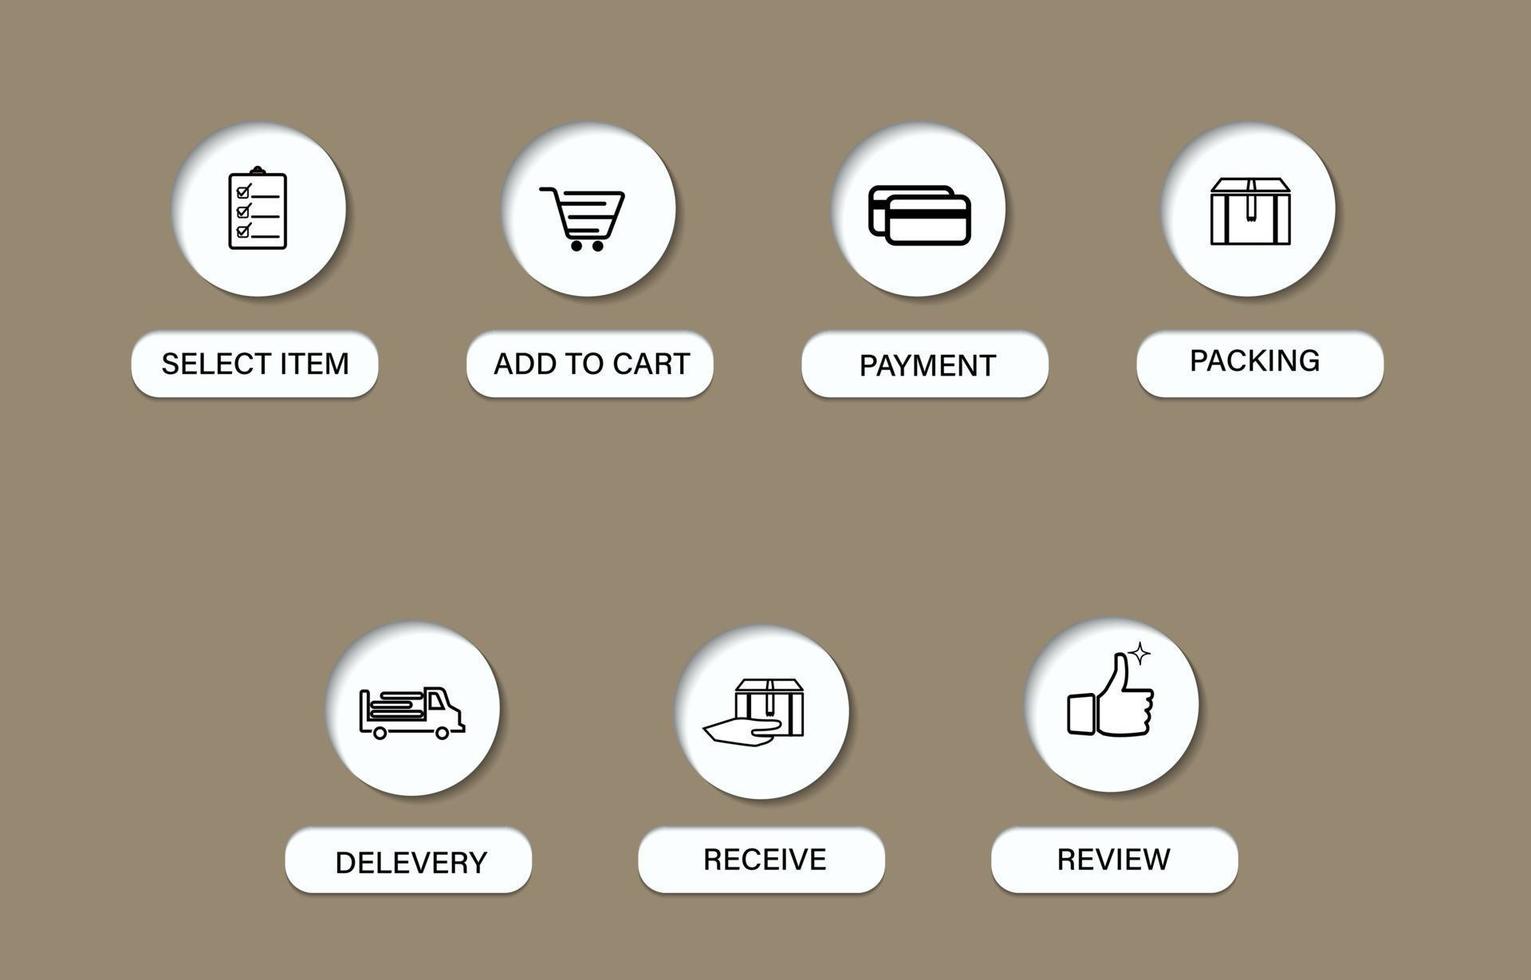 processo de sete etapas para compras em lojas online, ícones que parecem 3D, ícone de lista para pedidos de mercadorias, carrinho de compras, pagamento, embalagem, entrega, recebimento e avaliação, vetor